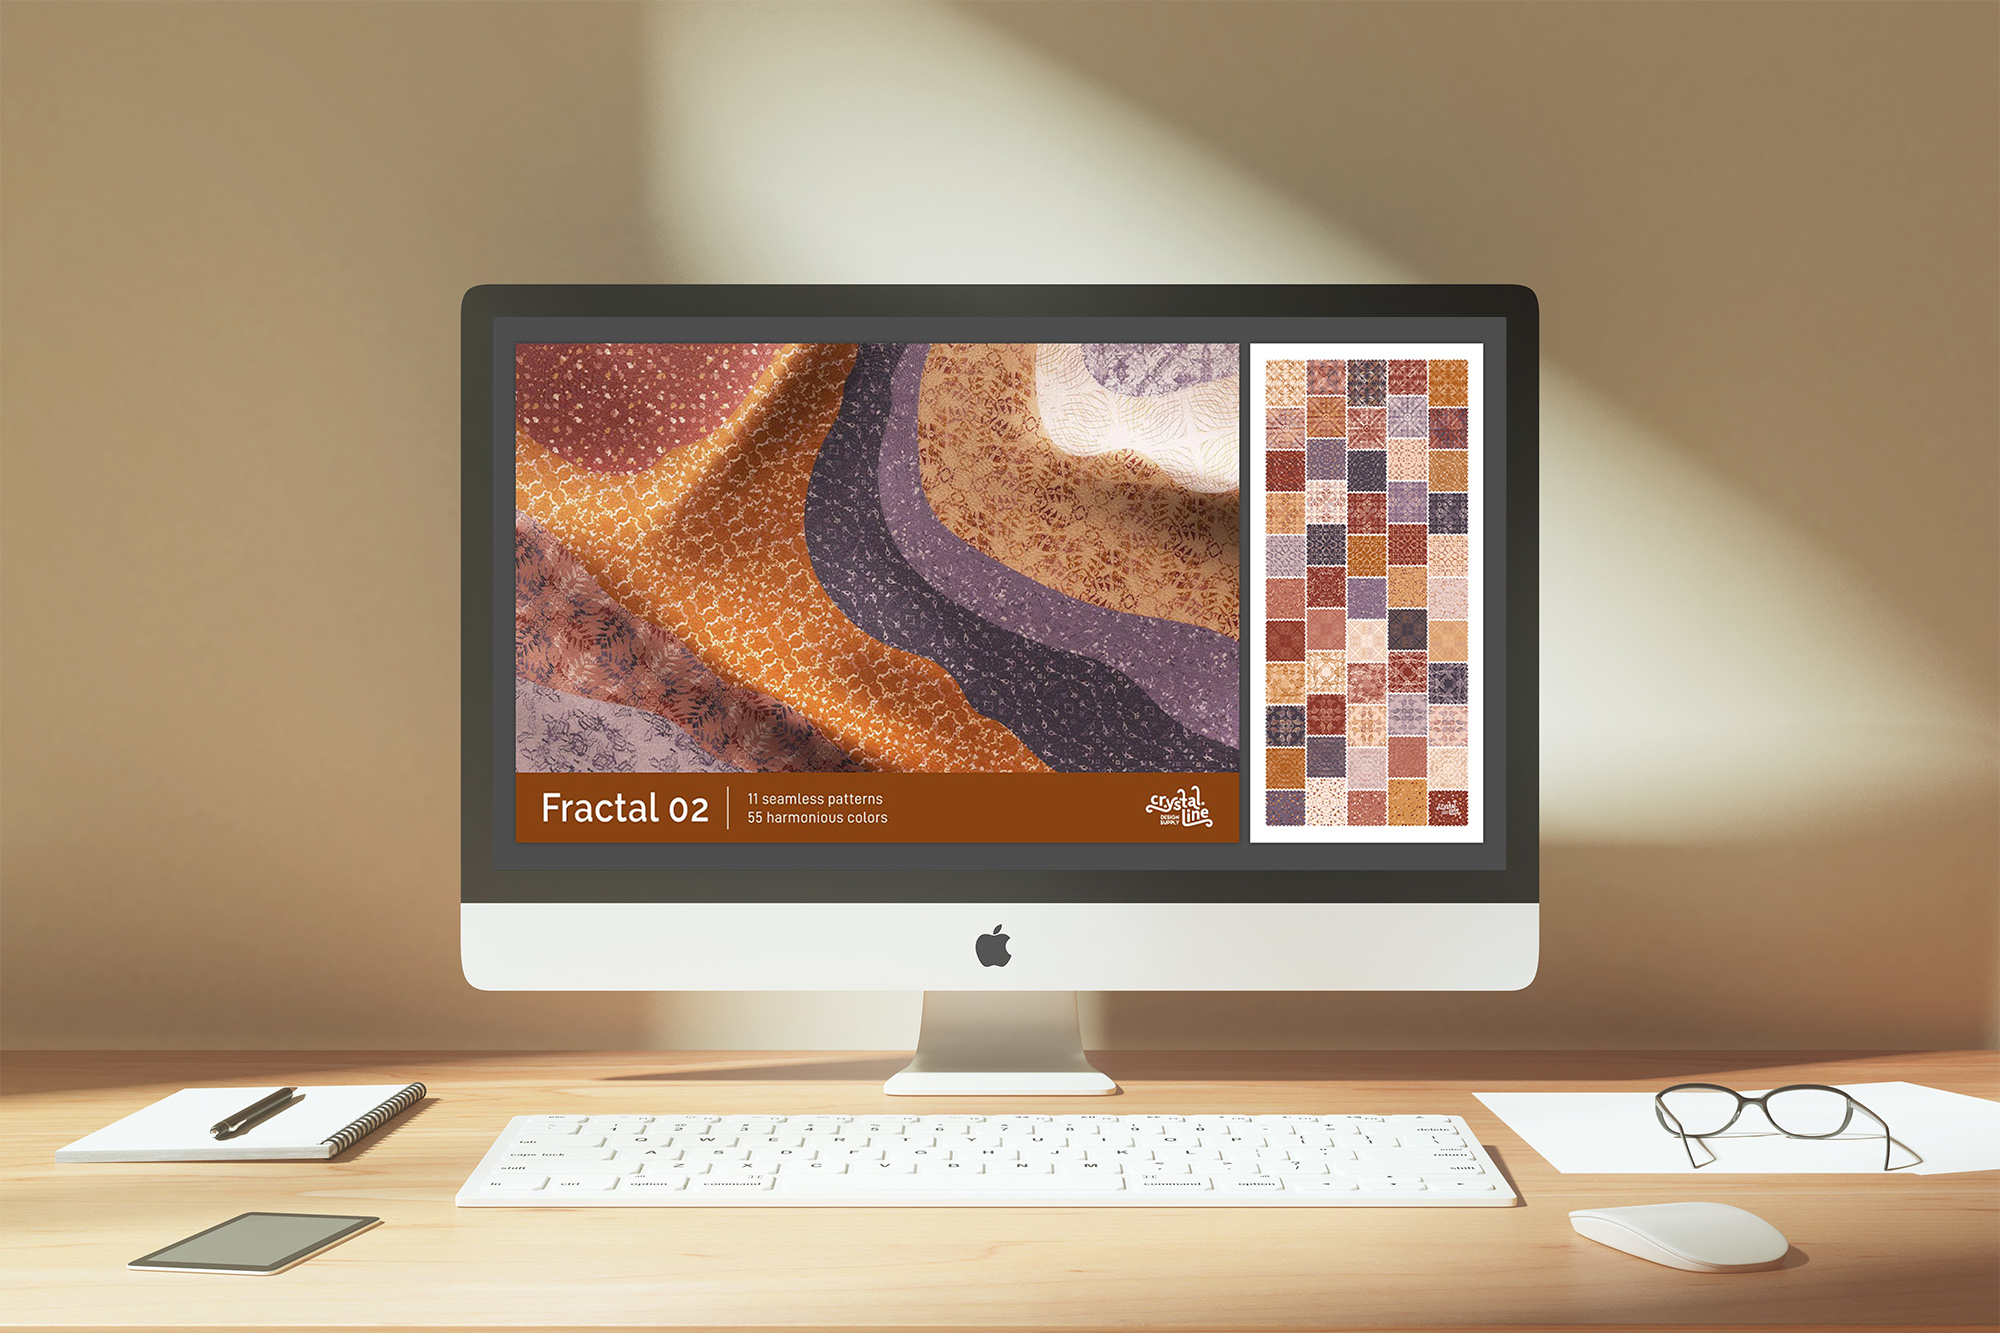 Fractal Patterns 02 desktop mockup.